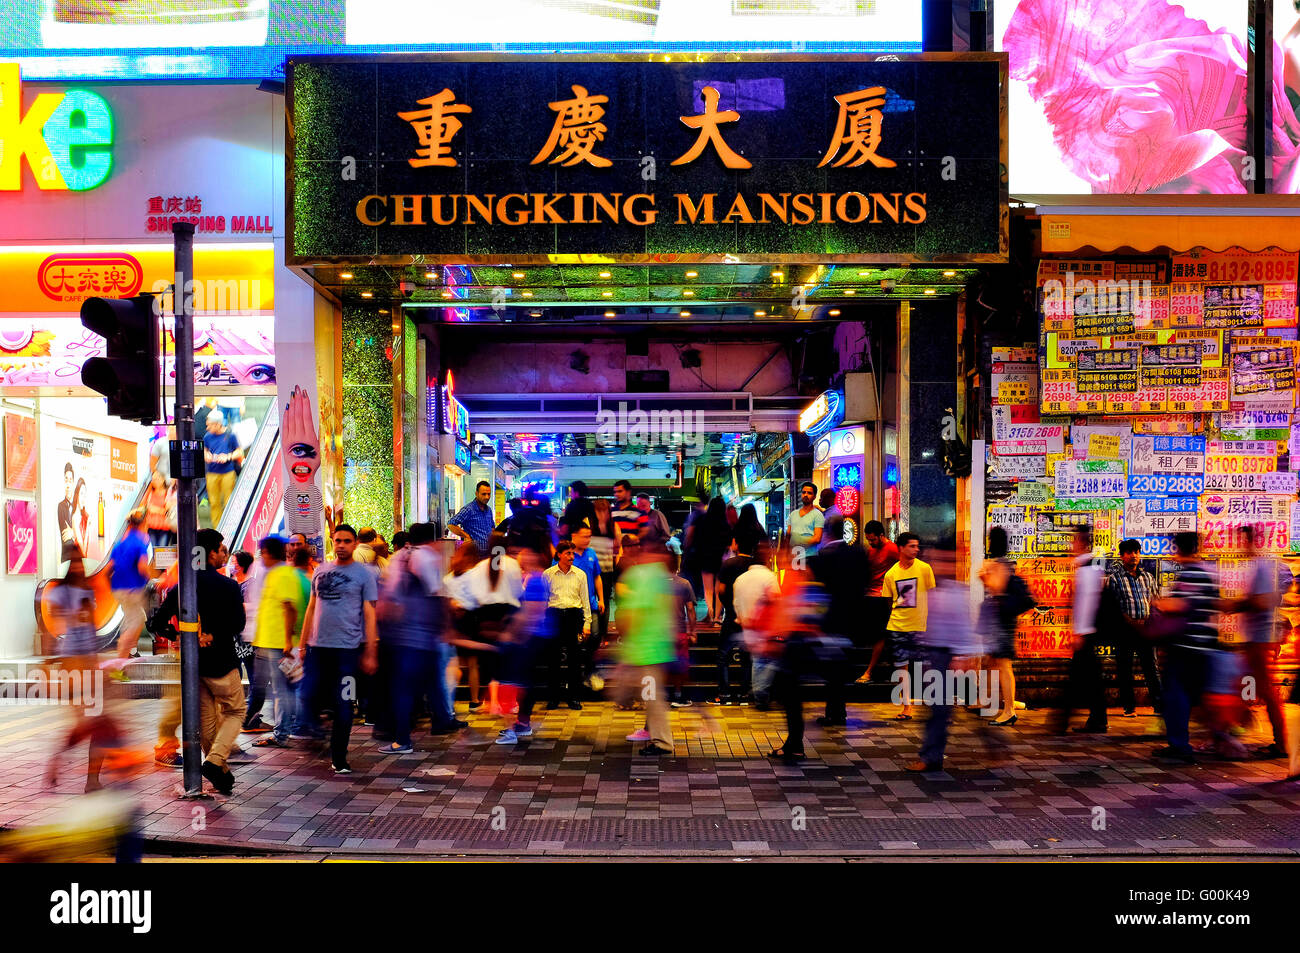 Entrance to the famous Chungking Mansions, Kowloon, Hong Kong, China Stock Photo